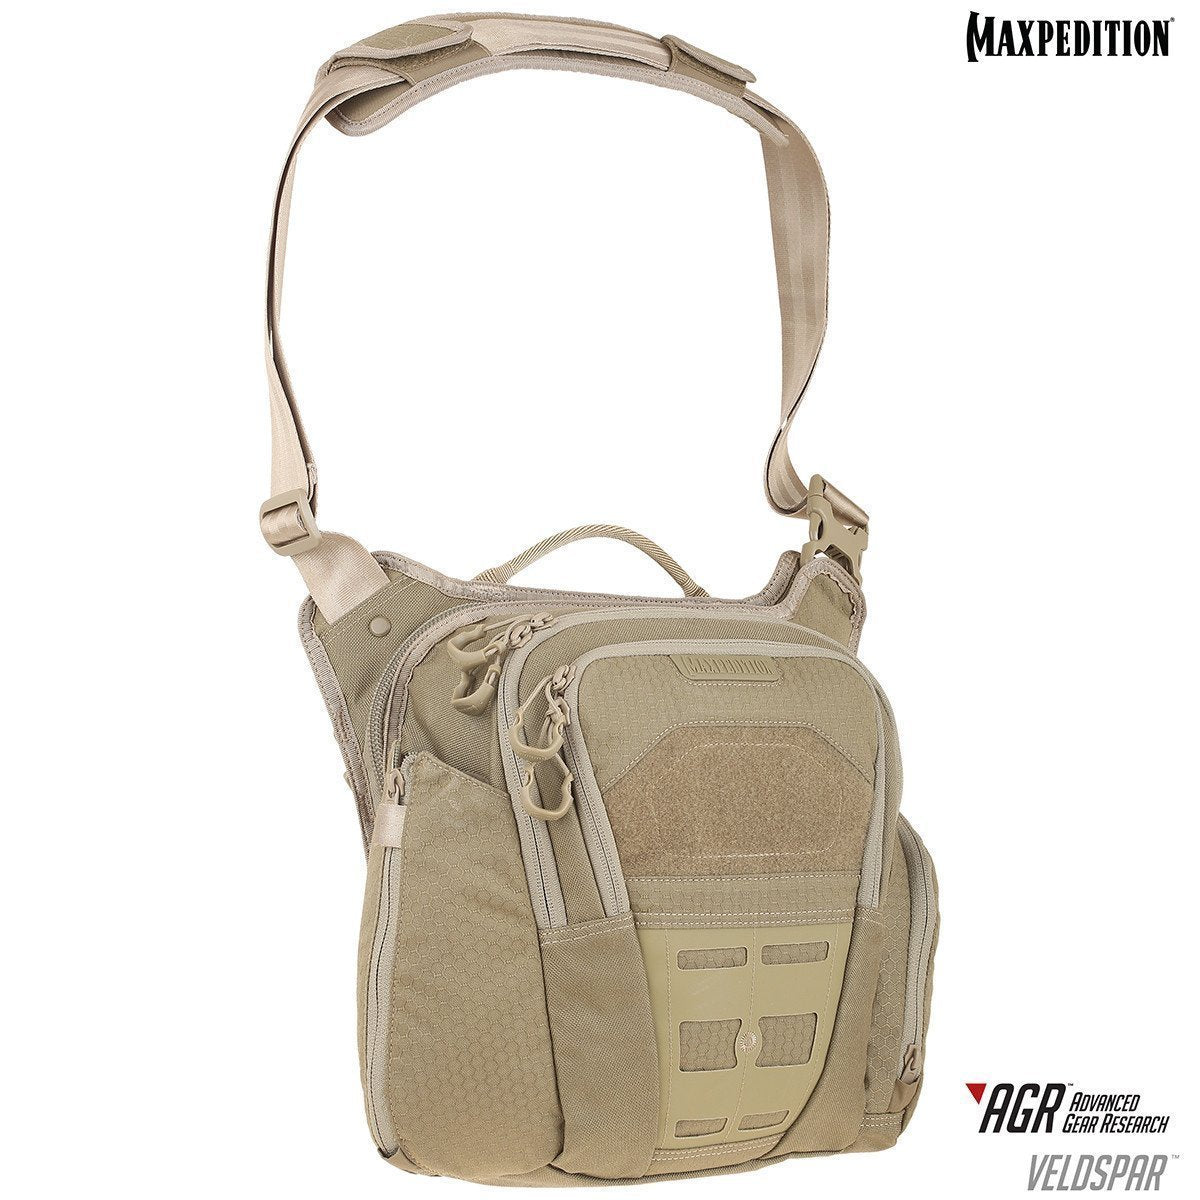 Maxpedition Veldspar Crossbody Shoulder Bag 8L Bags, Packs and Cases Maxpedition Tan Tactical Gear Supplier Tactical Distributors Australia